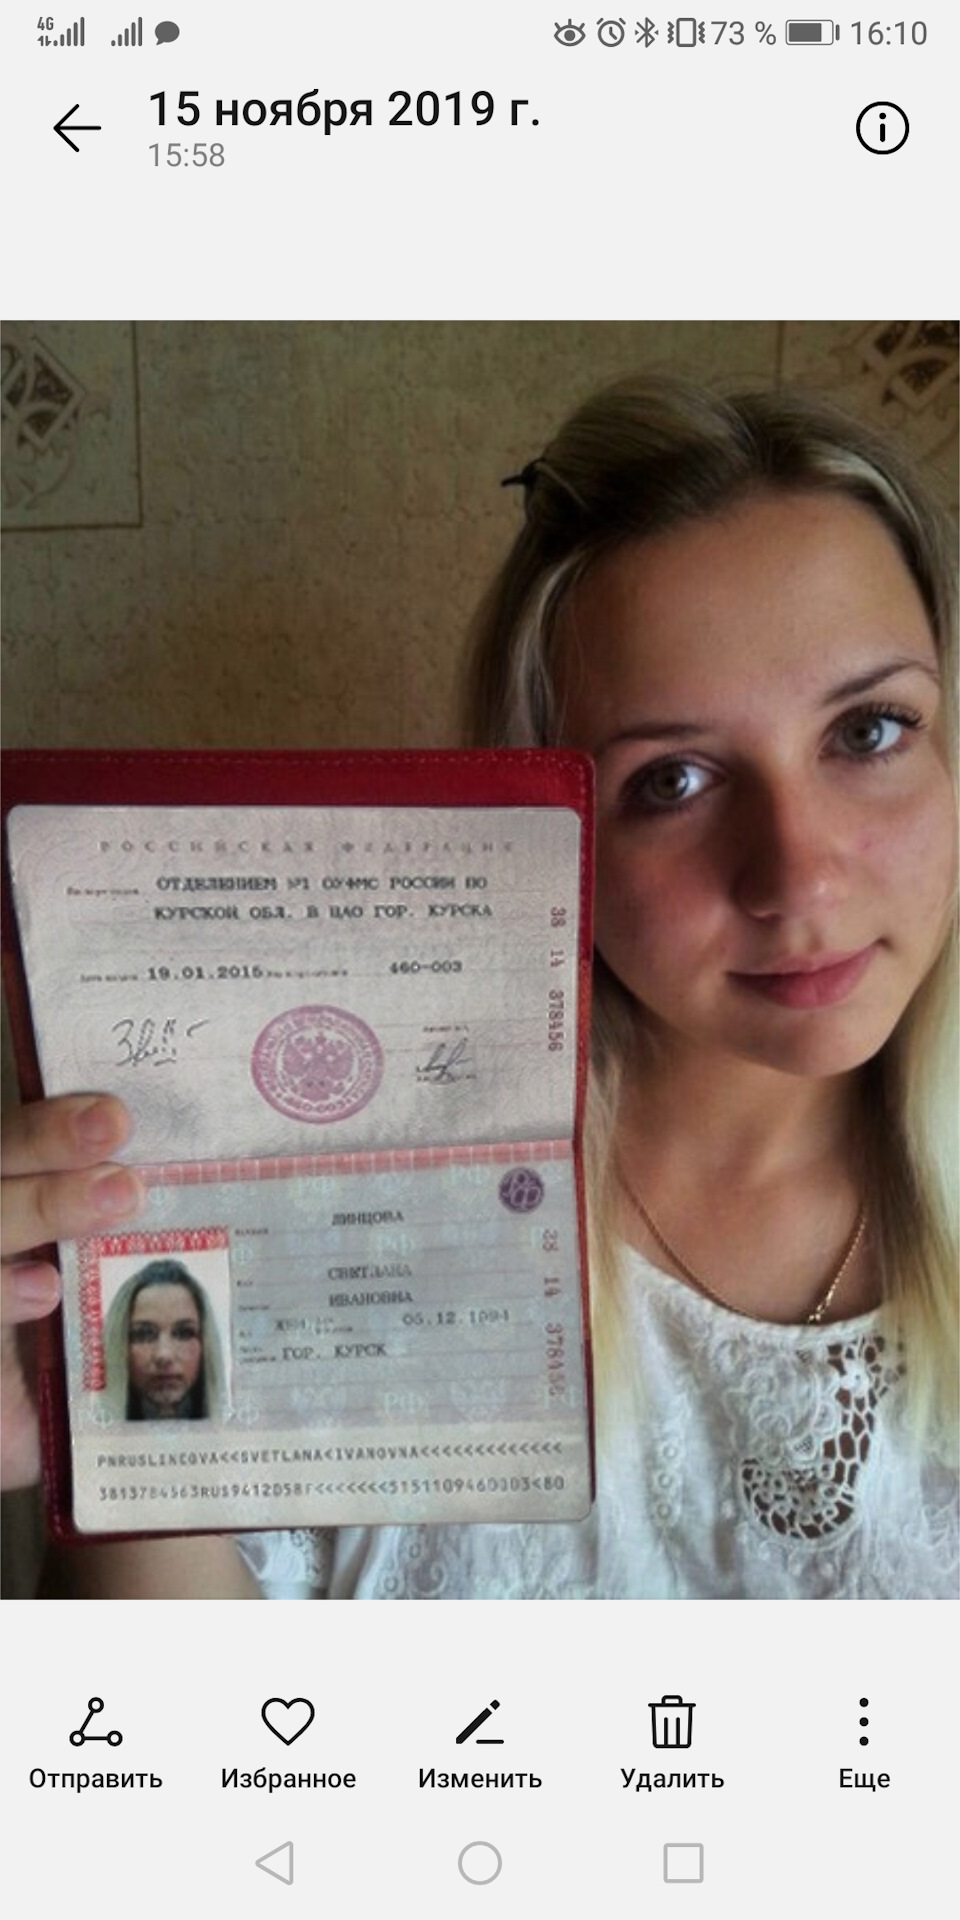 Фото паспорта фото с паспортом